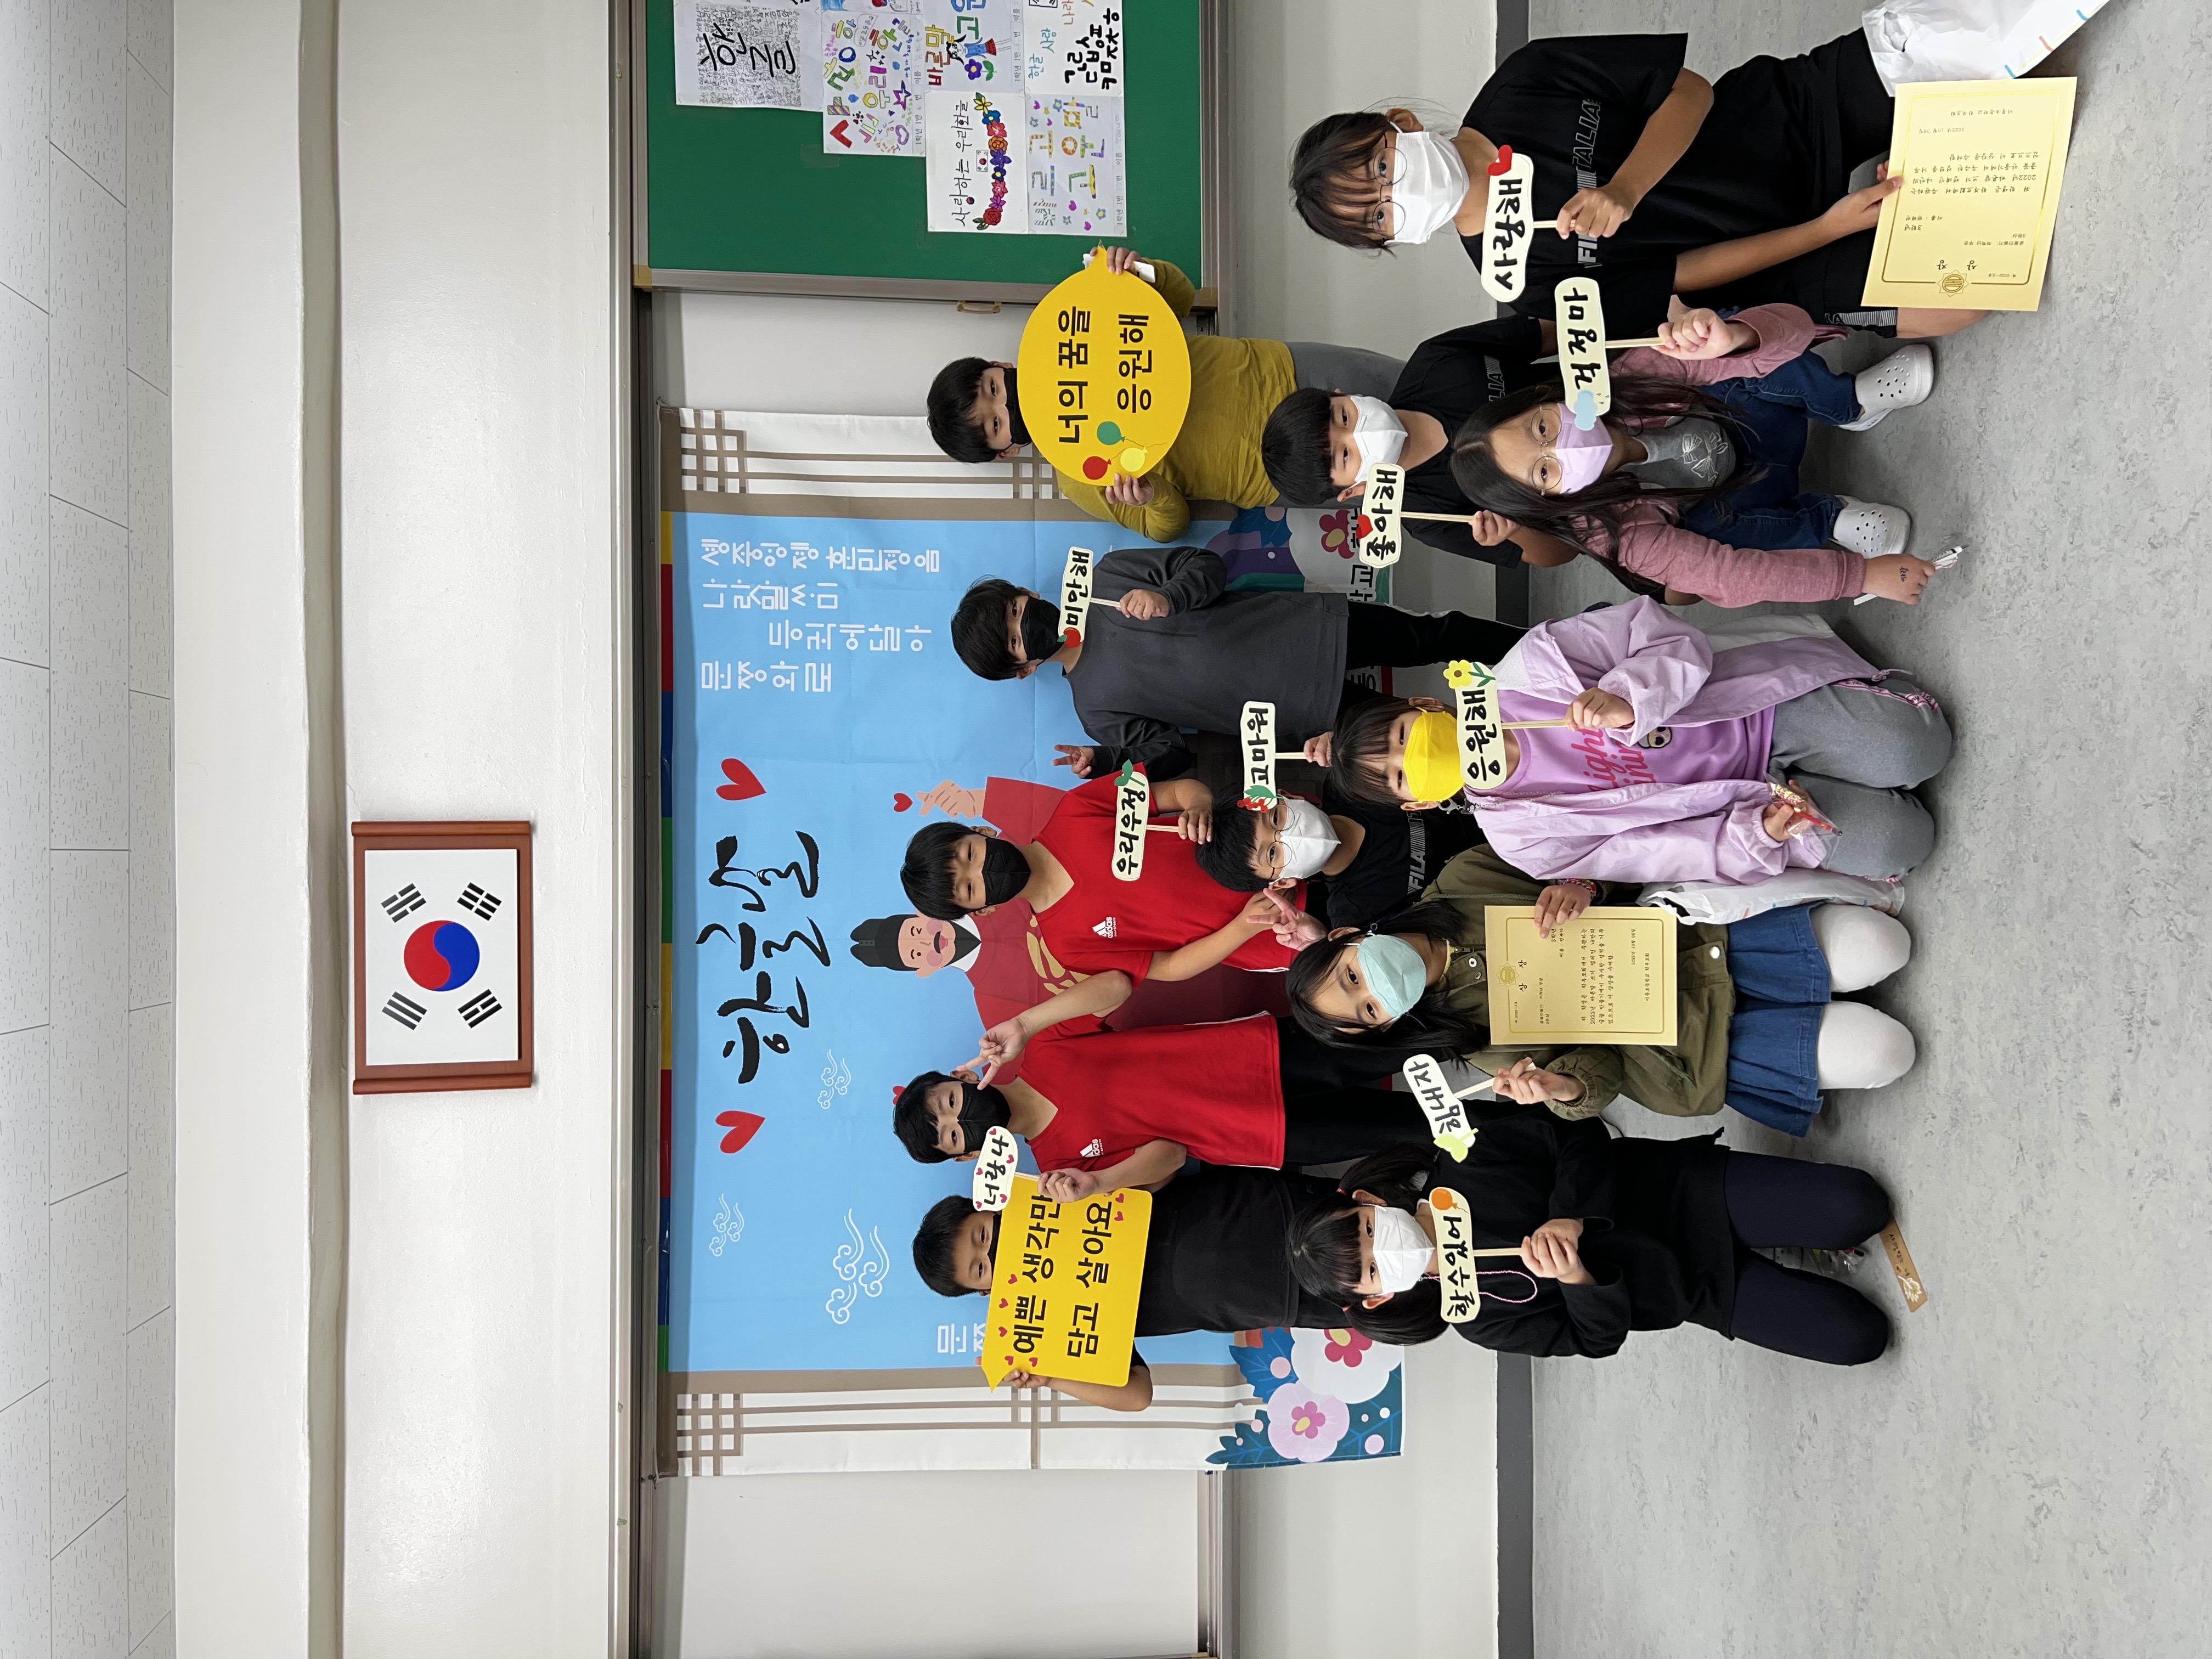 [일반] 2022년 10월 6일 학부모회 주관 한글날 캠페인 활동 사진입니다.(3학년)의 첨부이미지 2